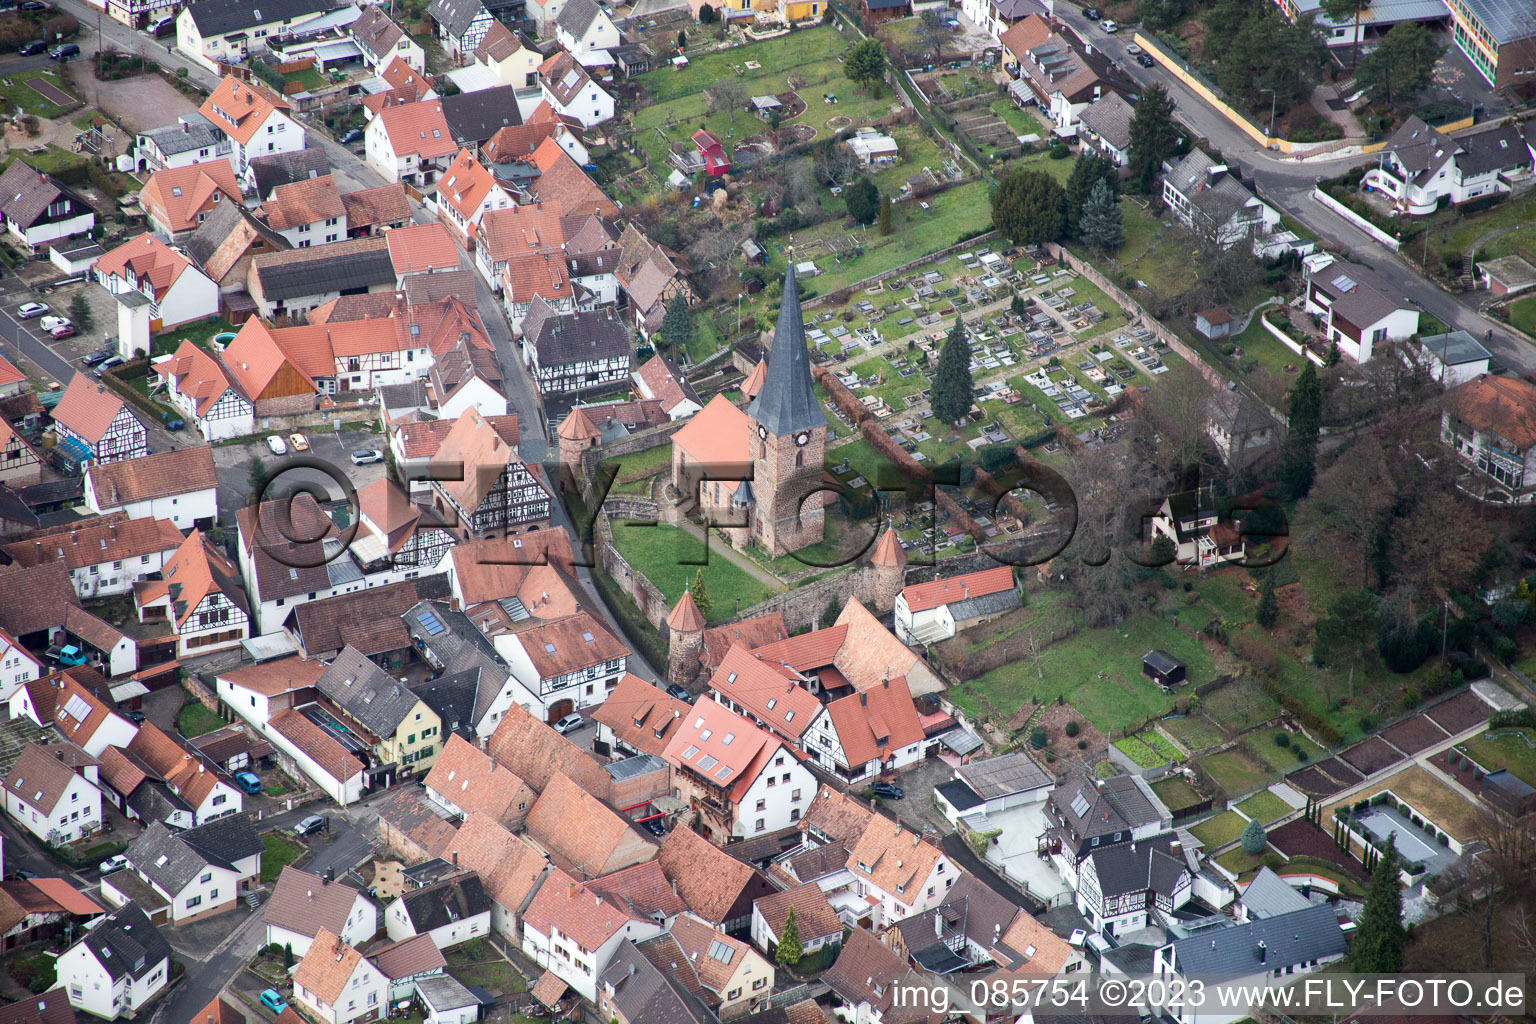 Dörrenbach im Bundesland Rheinland-Pfalz, Deutschland von der Drohne aus gesehen